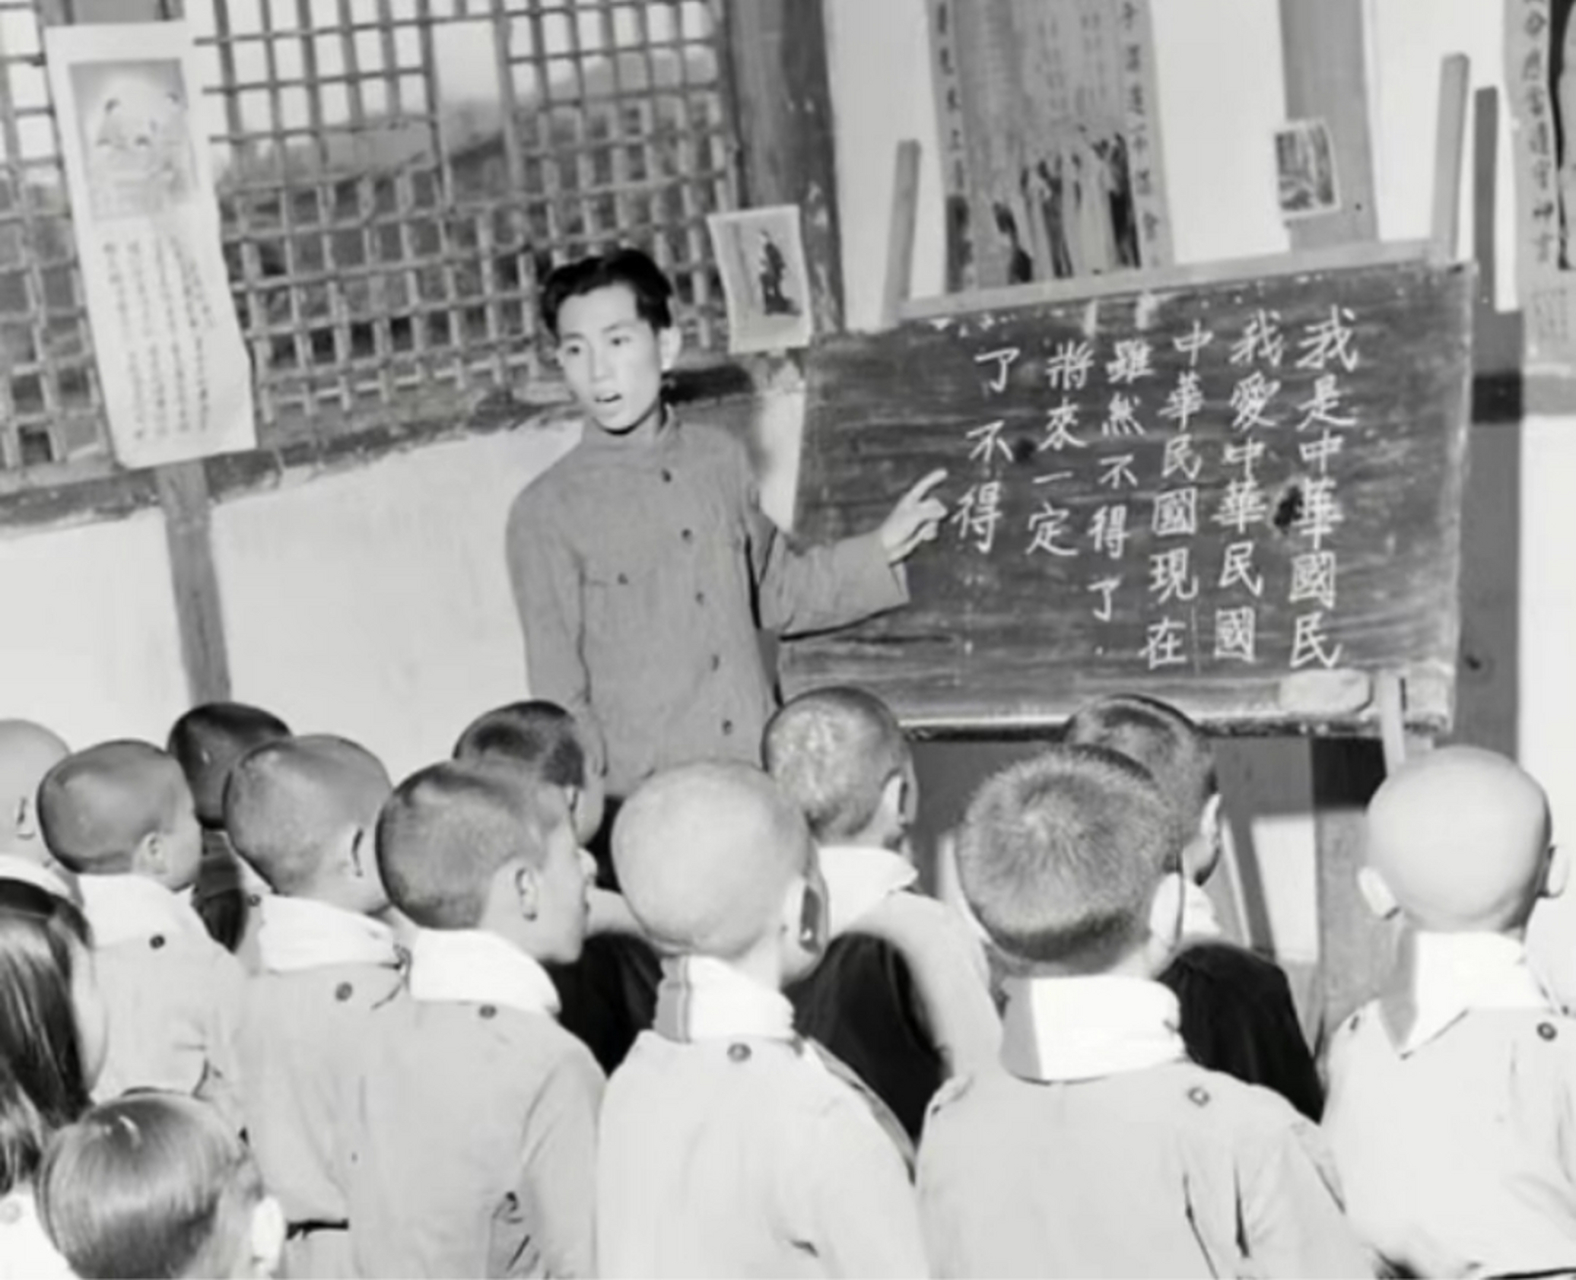 民国老照片,成都龙泉驿某小学课堂上课的场景,语文老师在教学,黑板上